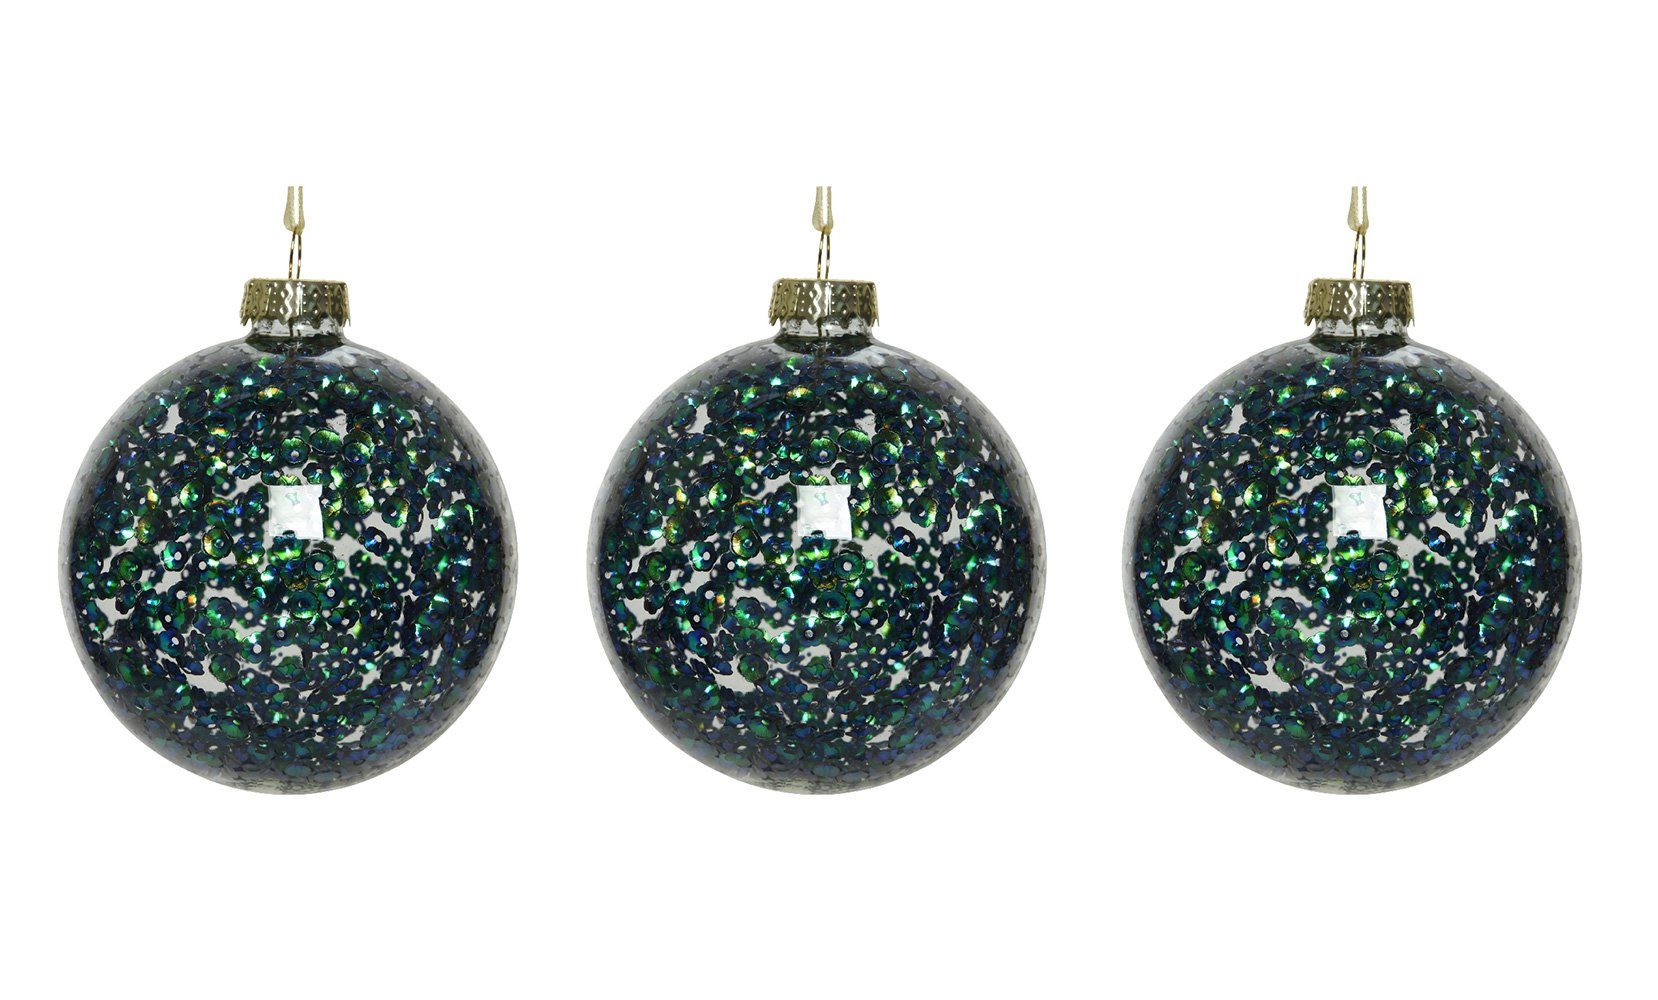 Decoris season decorations Weihnachtsbaumkugel, Weihnachtskugeln Glas 8cm mit Pailletten gefüllt 3er Set petrol